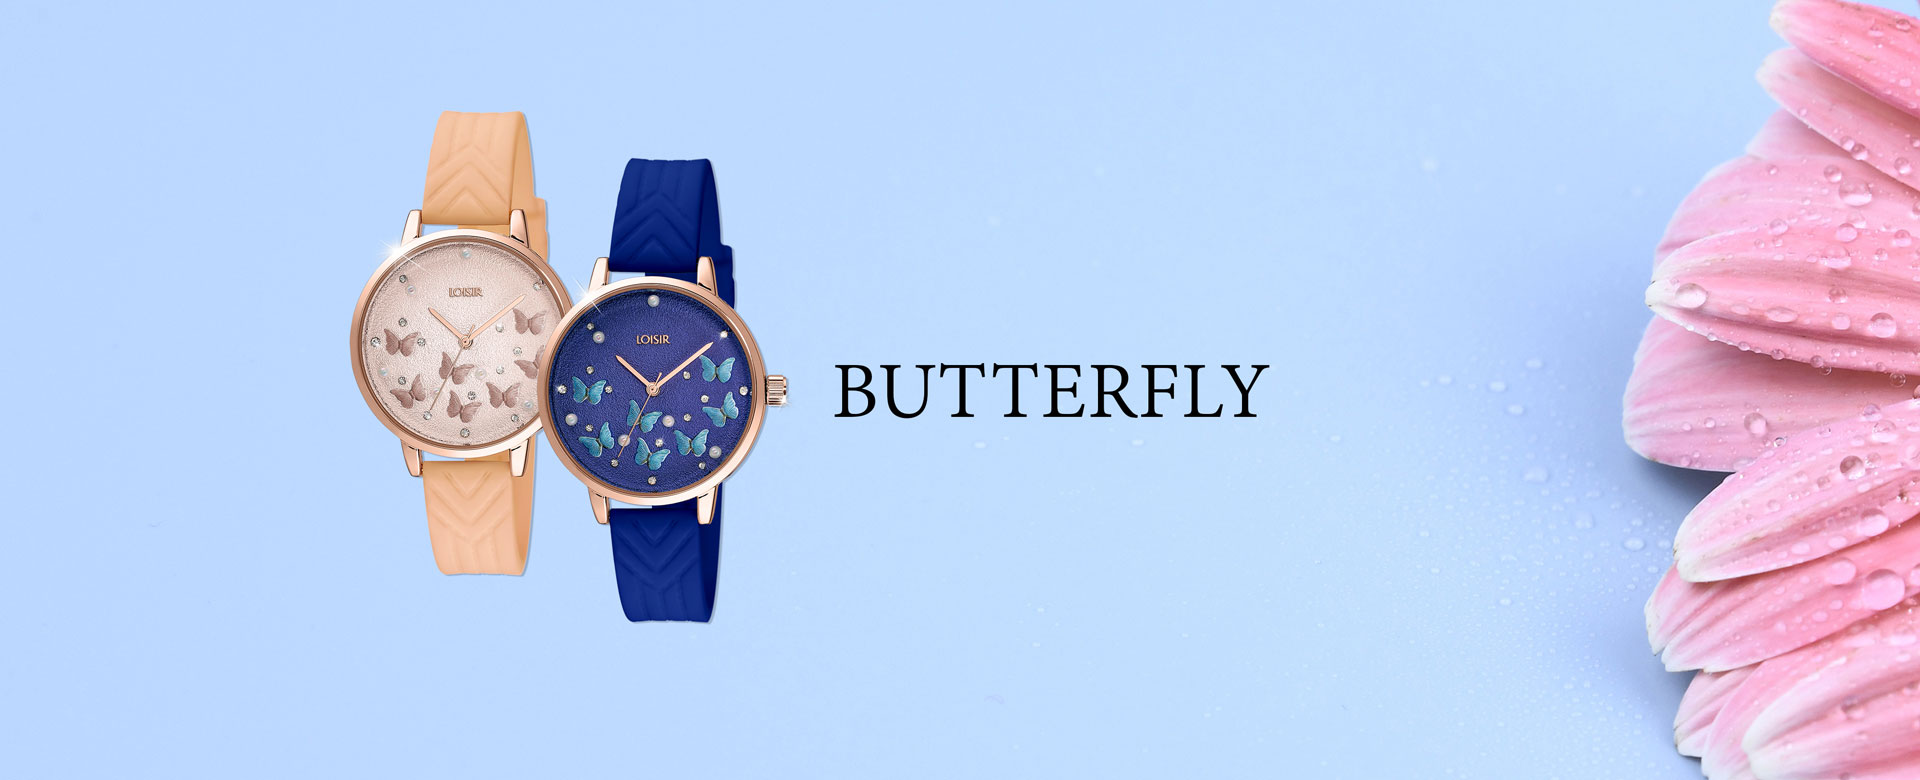 Butterfly Watch - Loisir